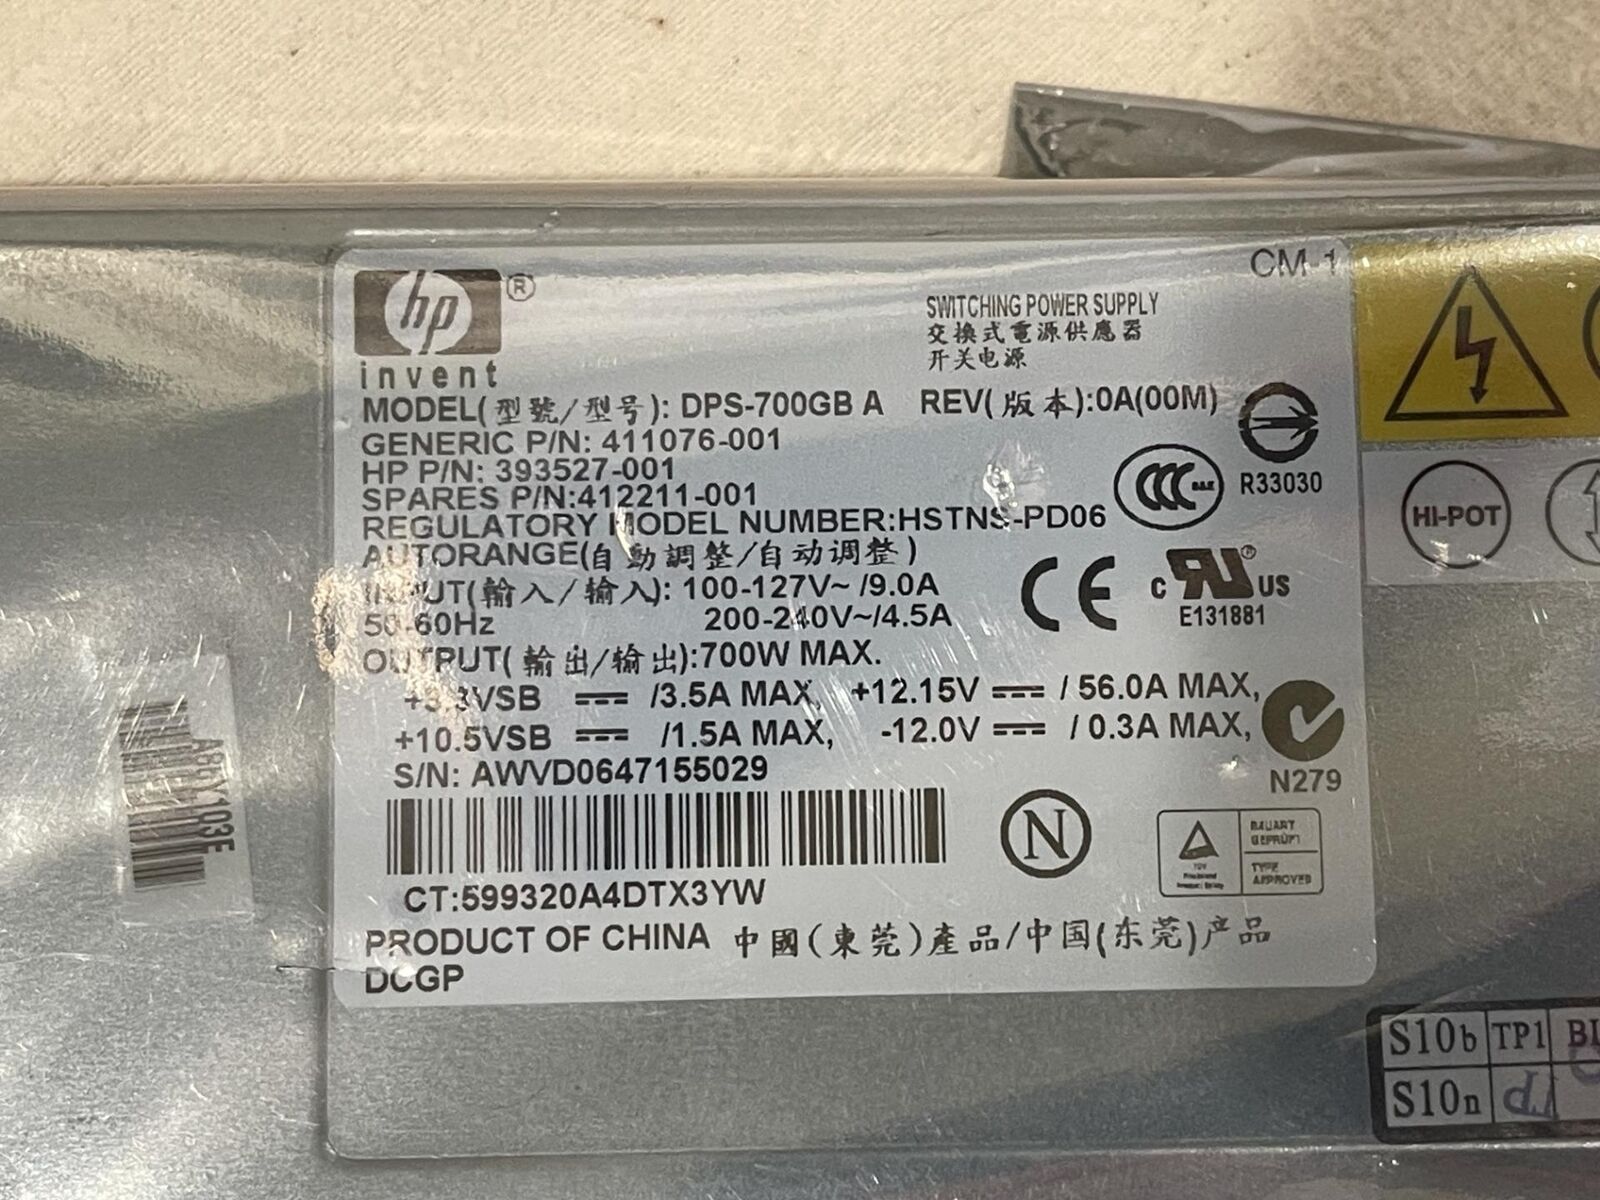 HP DL360 G5 700WATT Power Supply DPS-700GB A 412211-001 393527-001